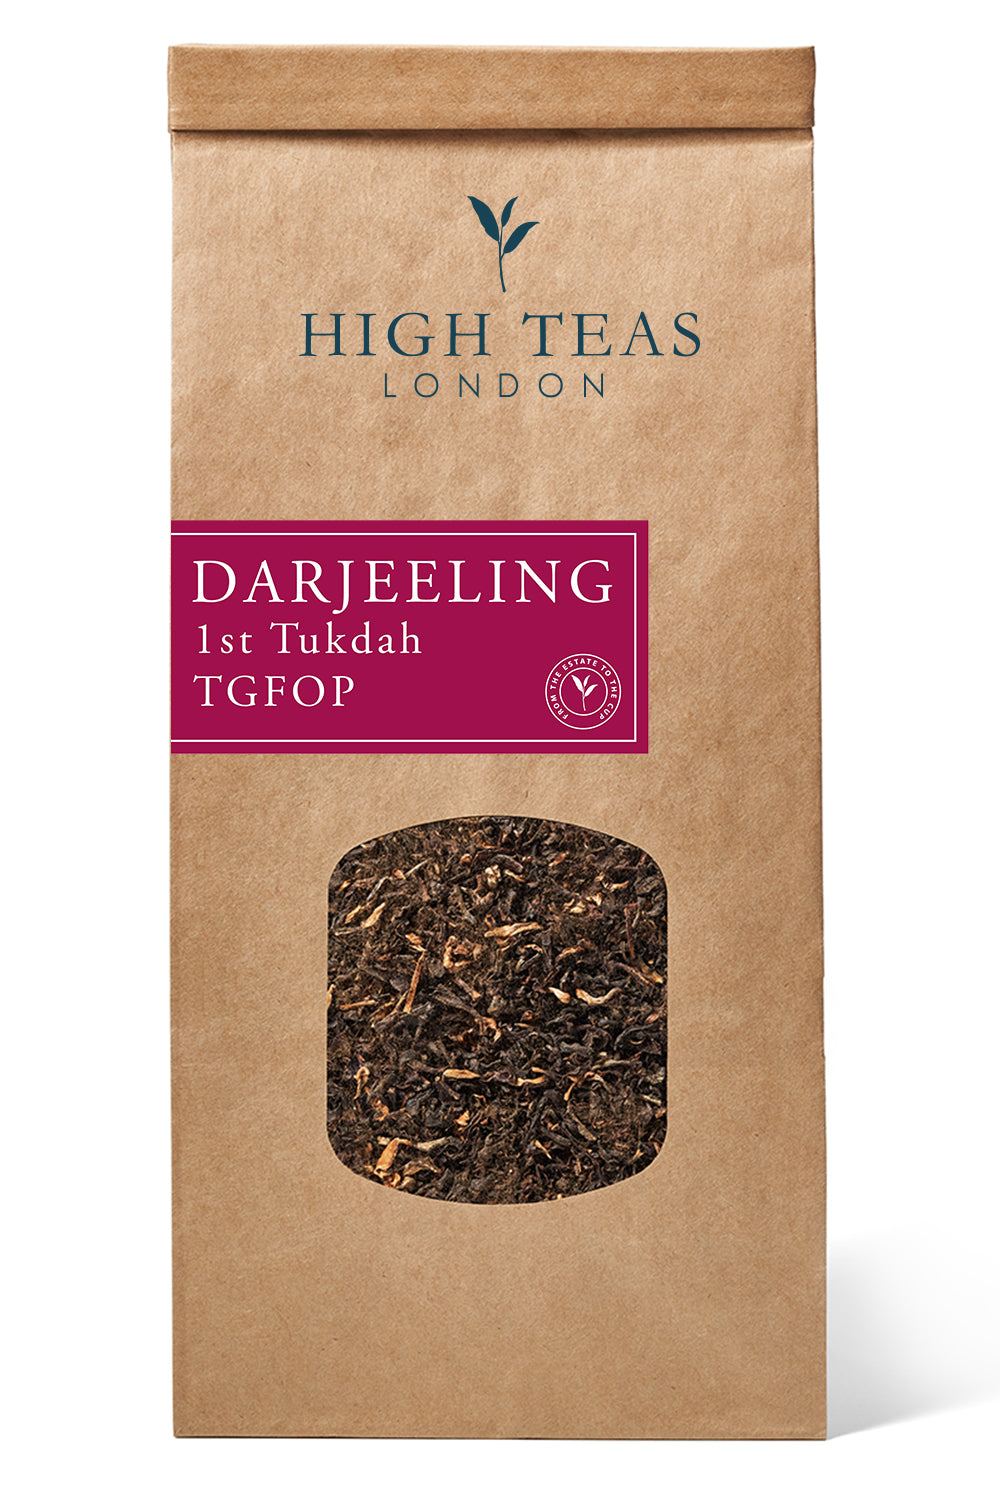 Darjeeling 1st Tukdah TGFOP-250g-Loose Leaf Tea-High Teas